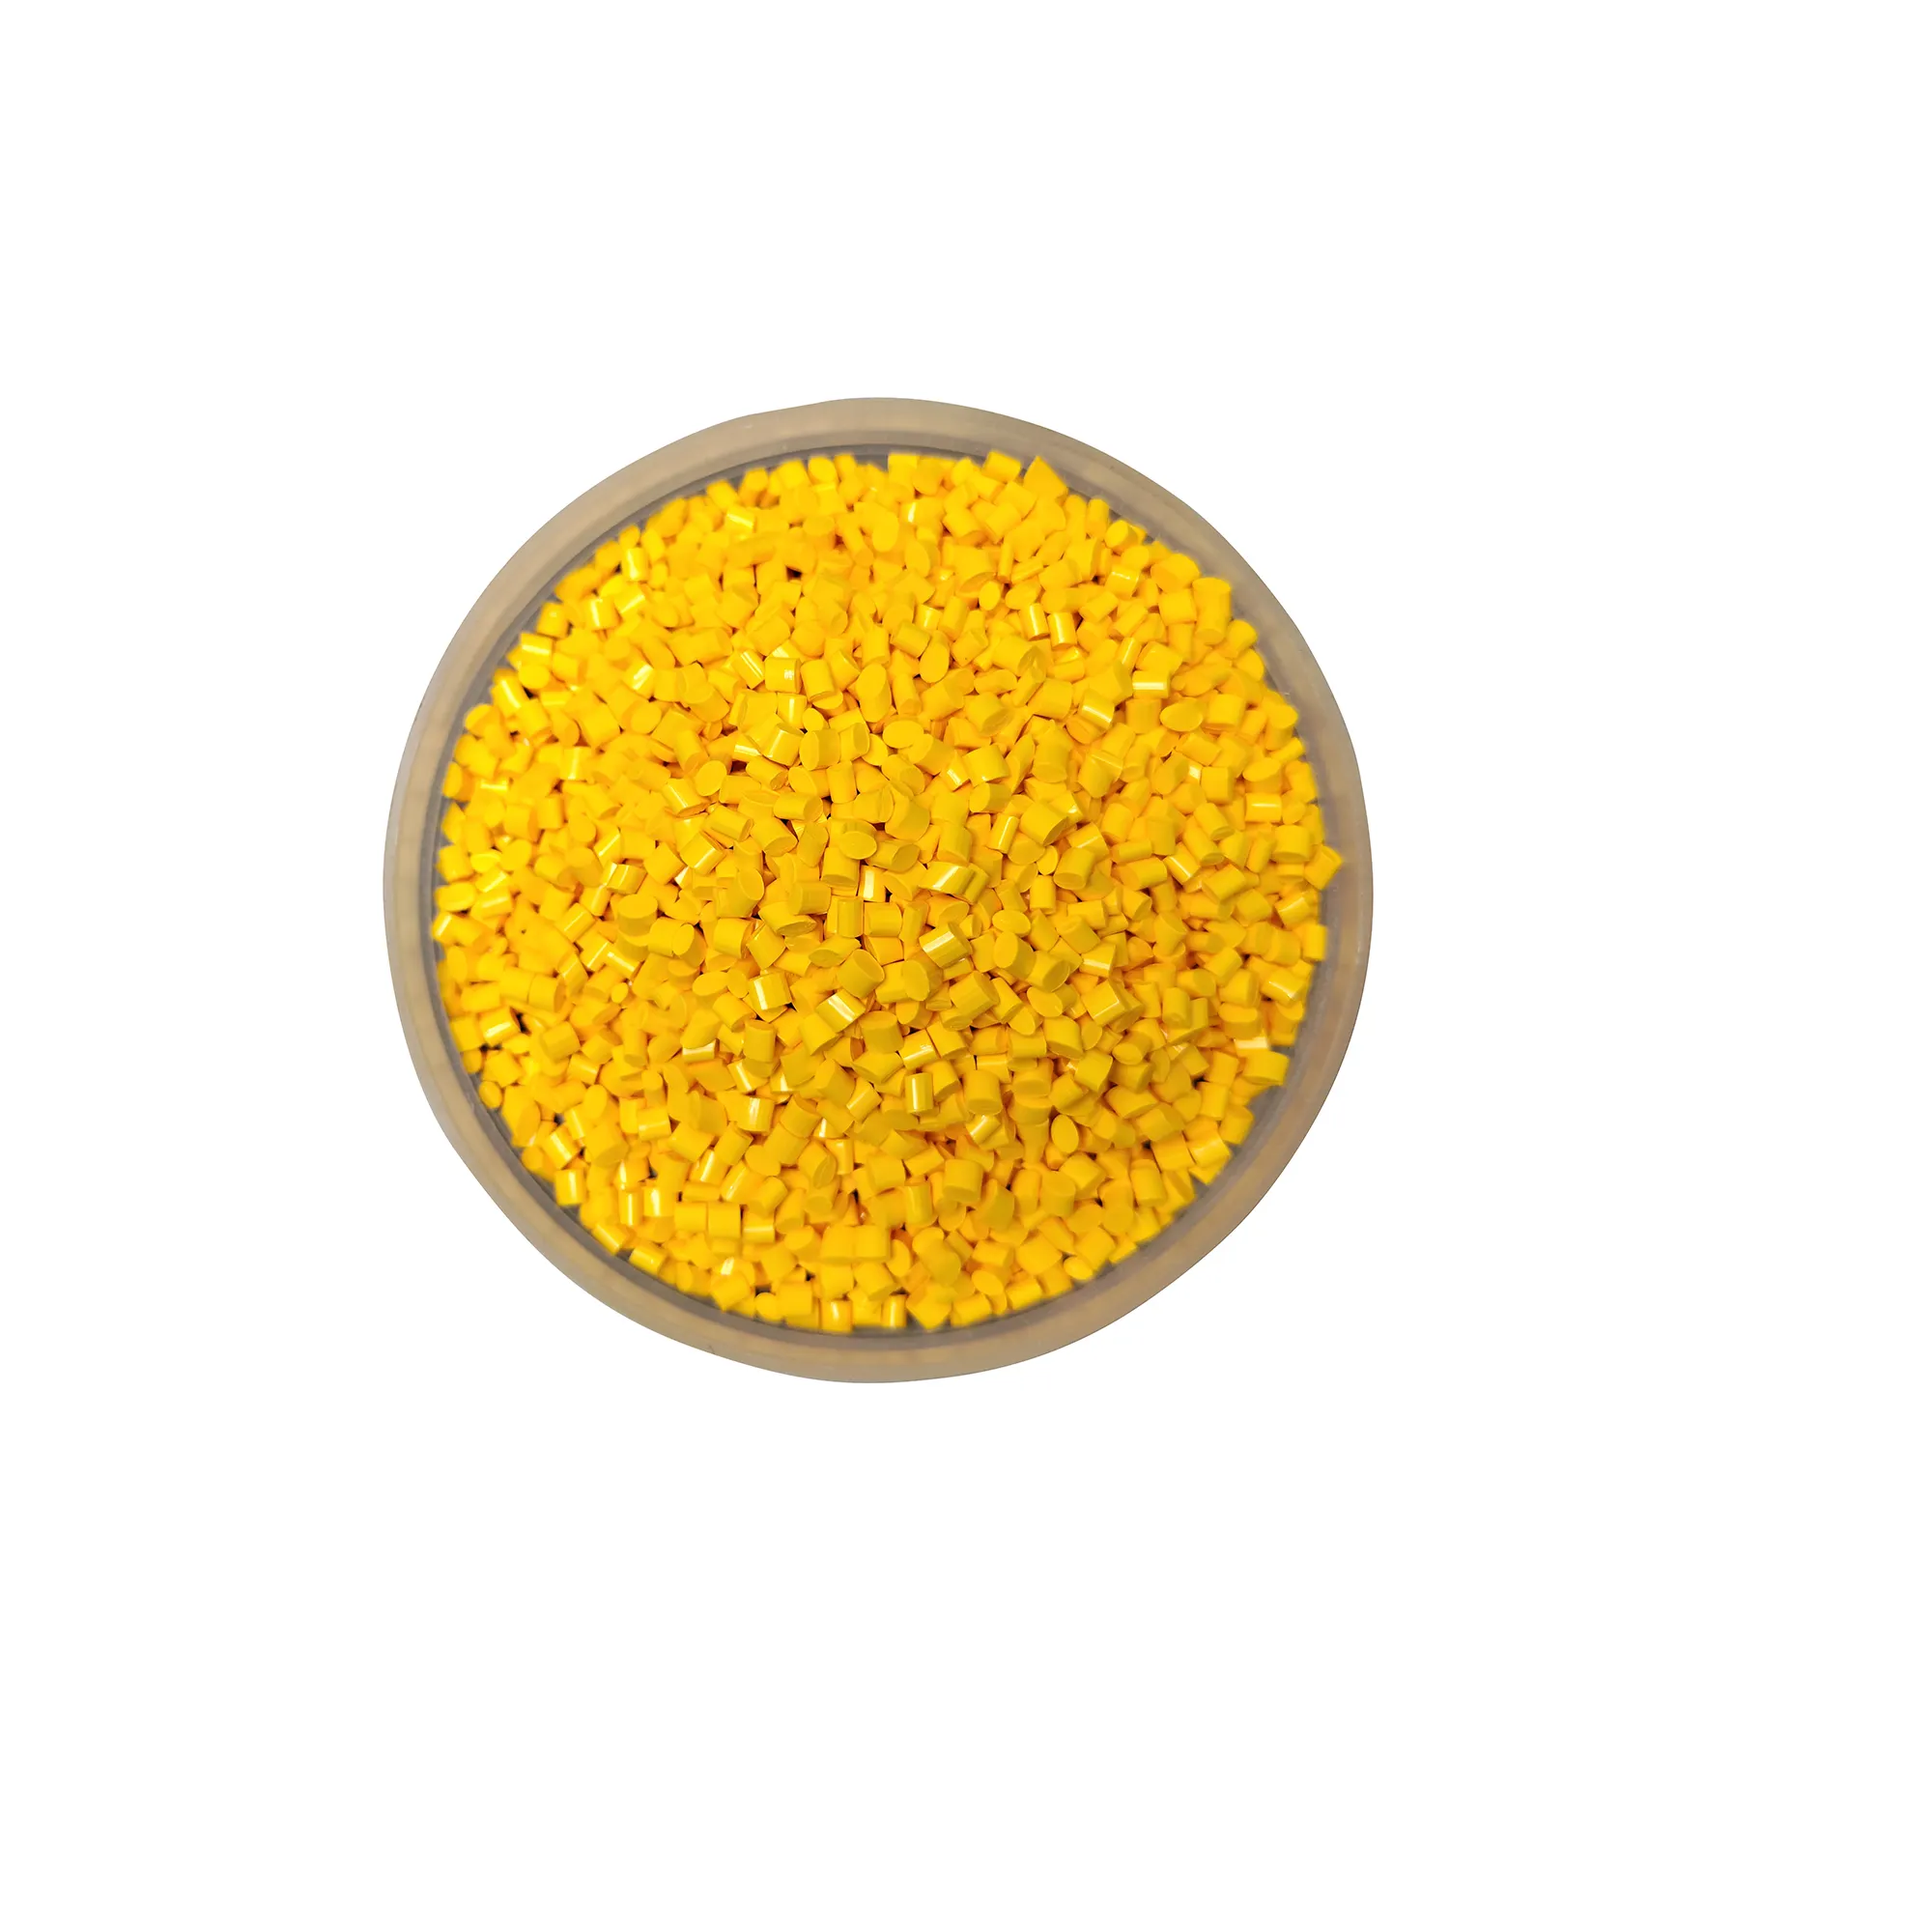 Высокая концентрация PE / PP / PS / ABS / PVC/ PC / PA / Pet / PU/EVA, маточная смесь желтого цвета